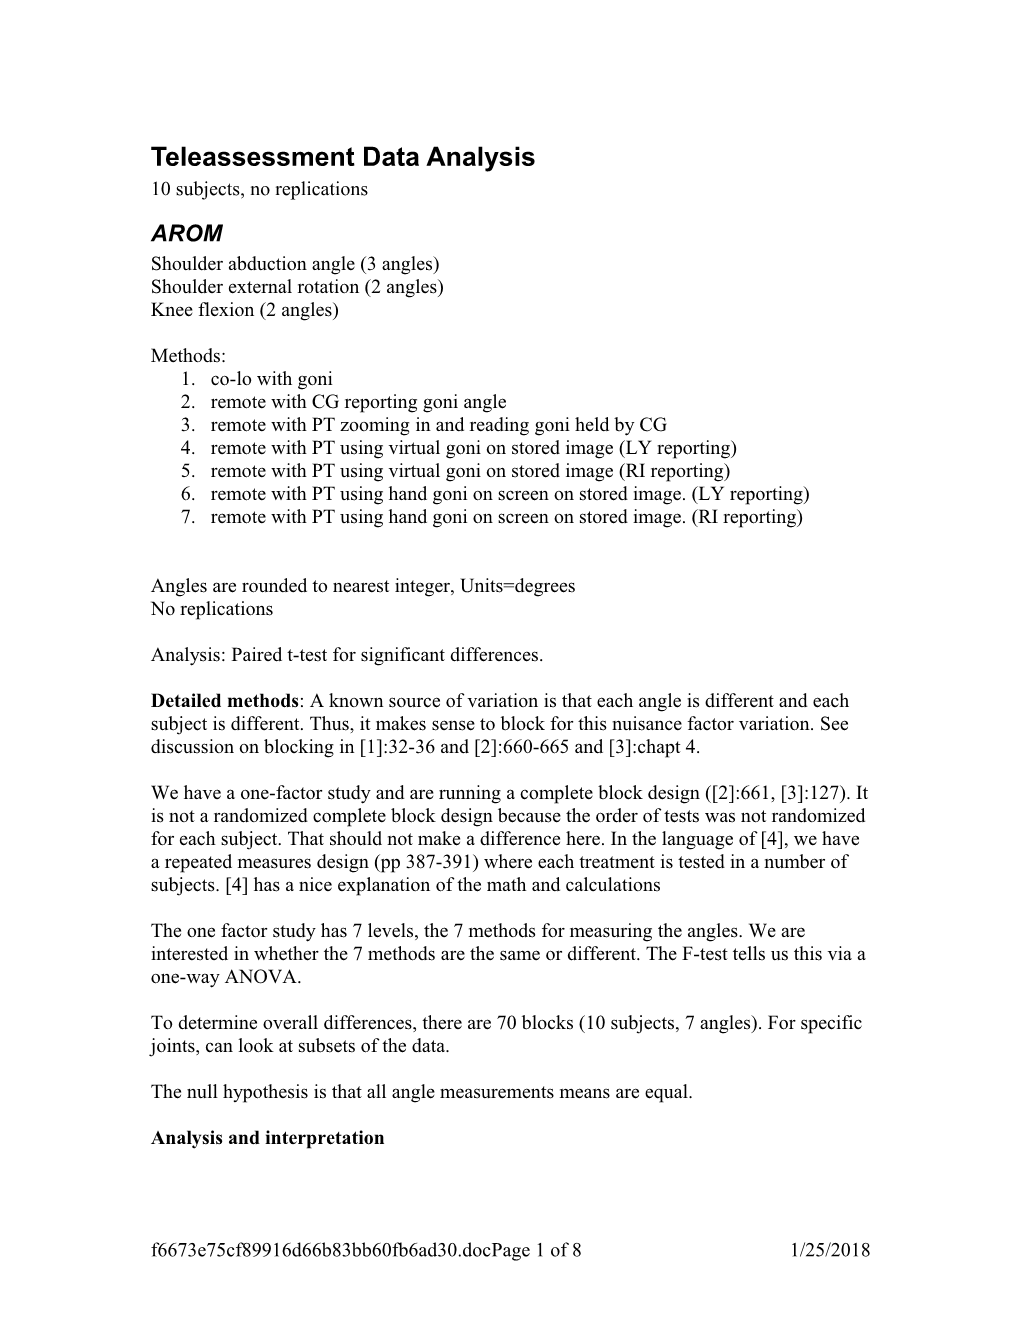 Teleassessment Data Analysis s1